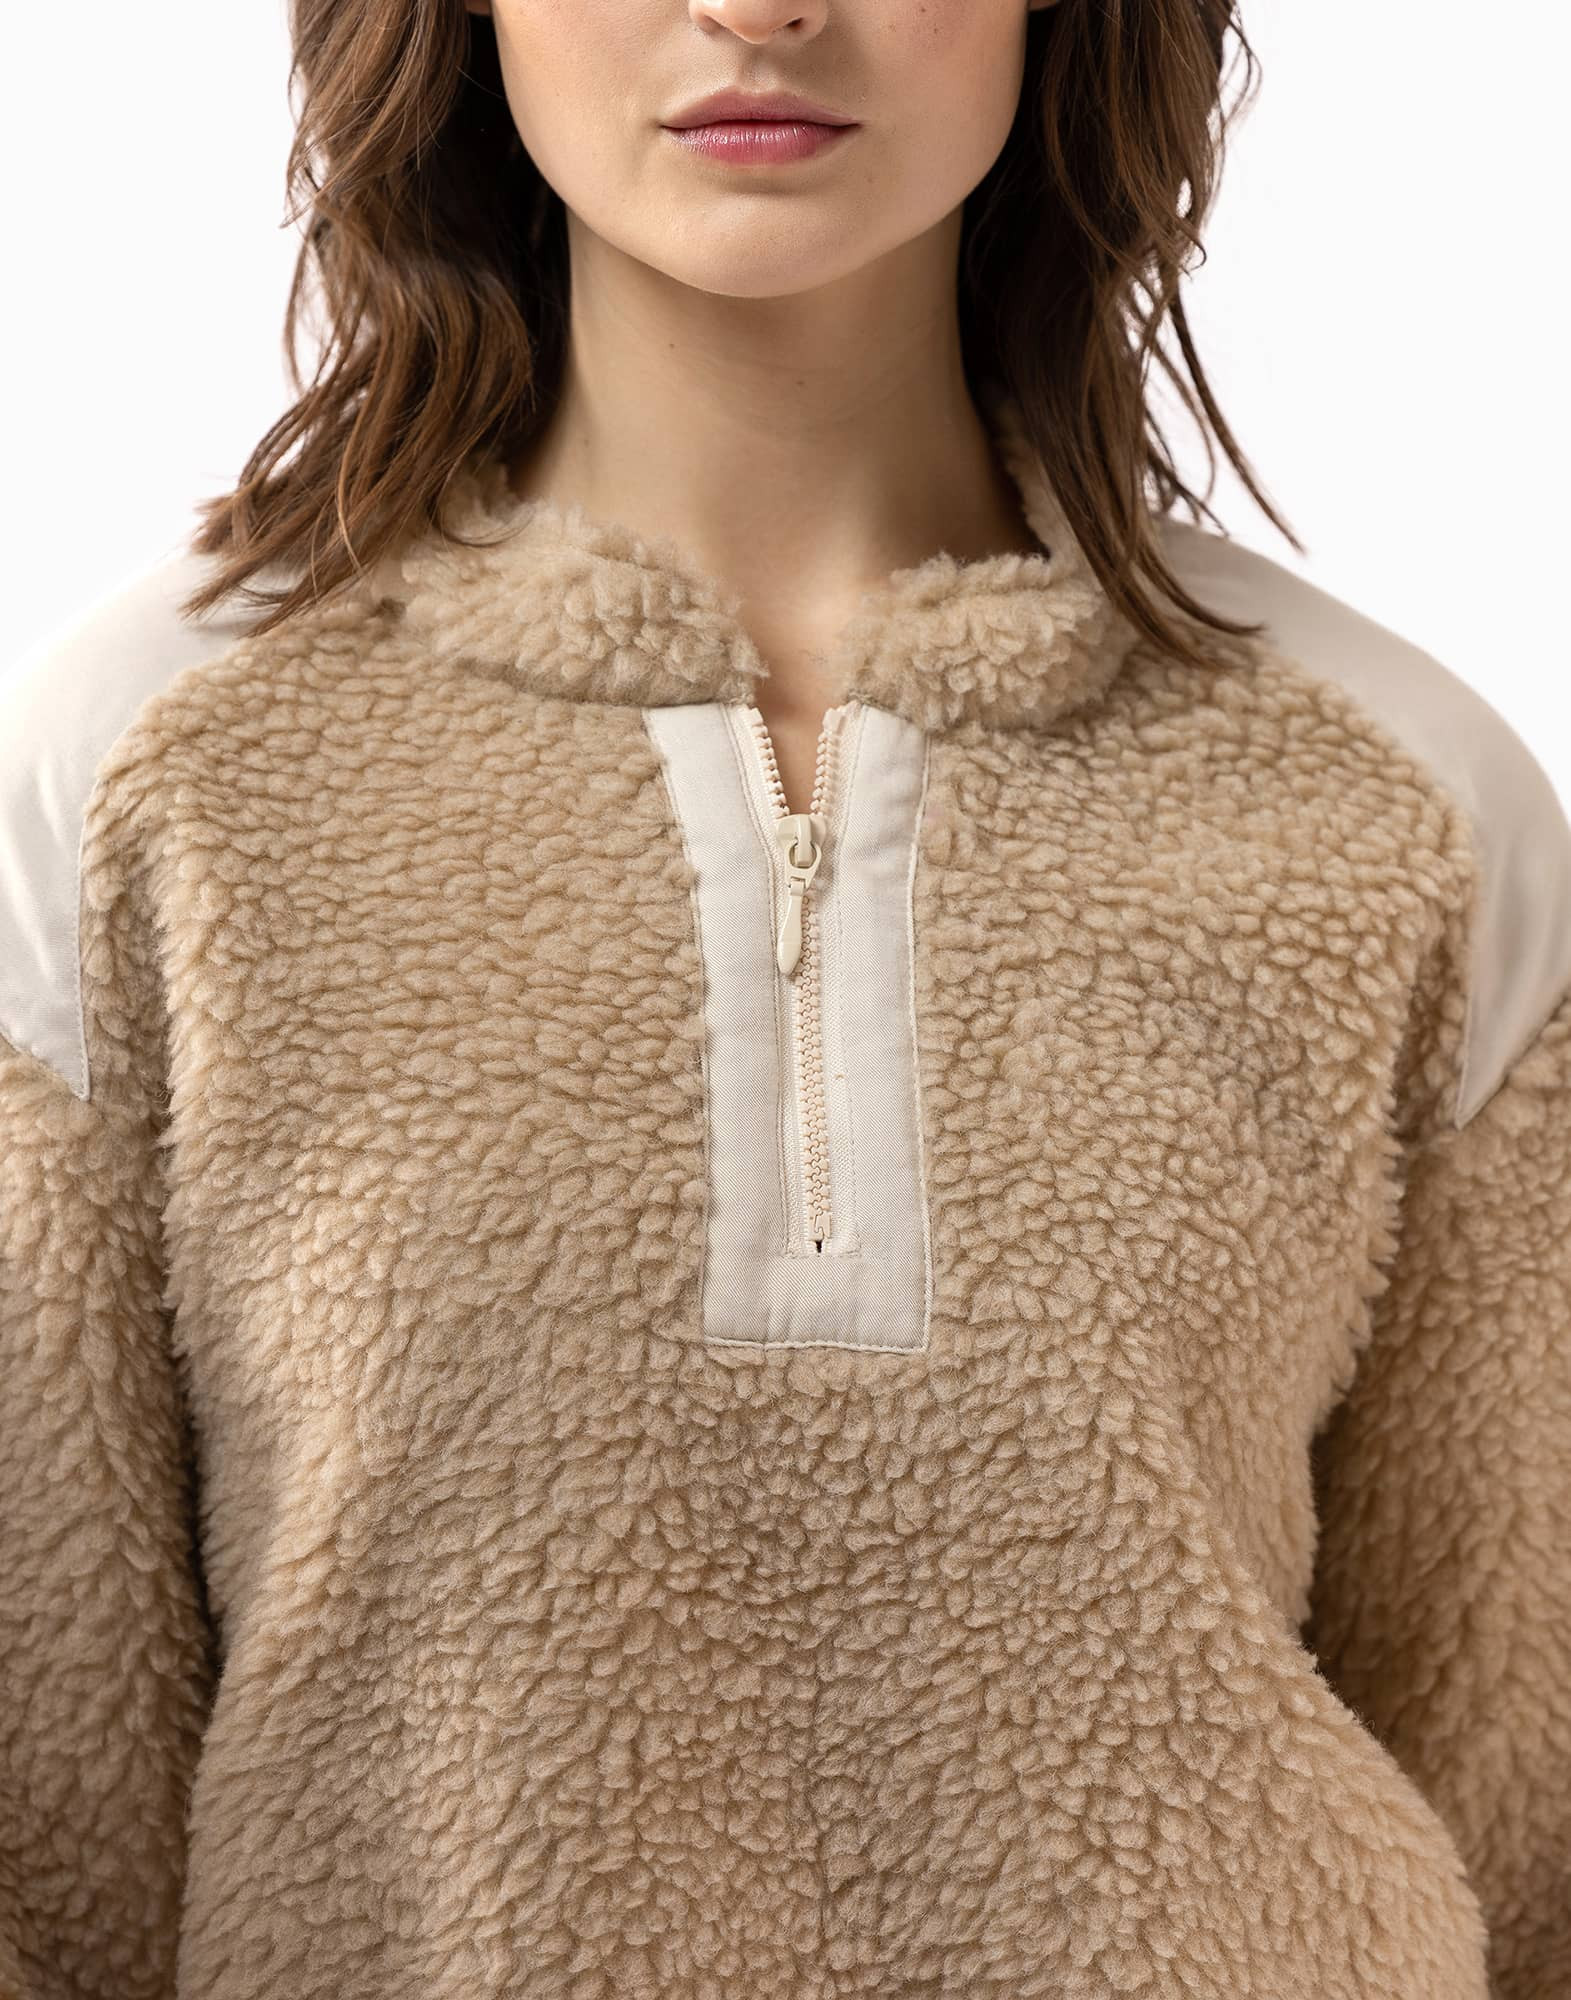 Plush fleece sweatshirt ANGORA 630 beige